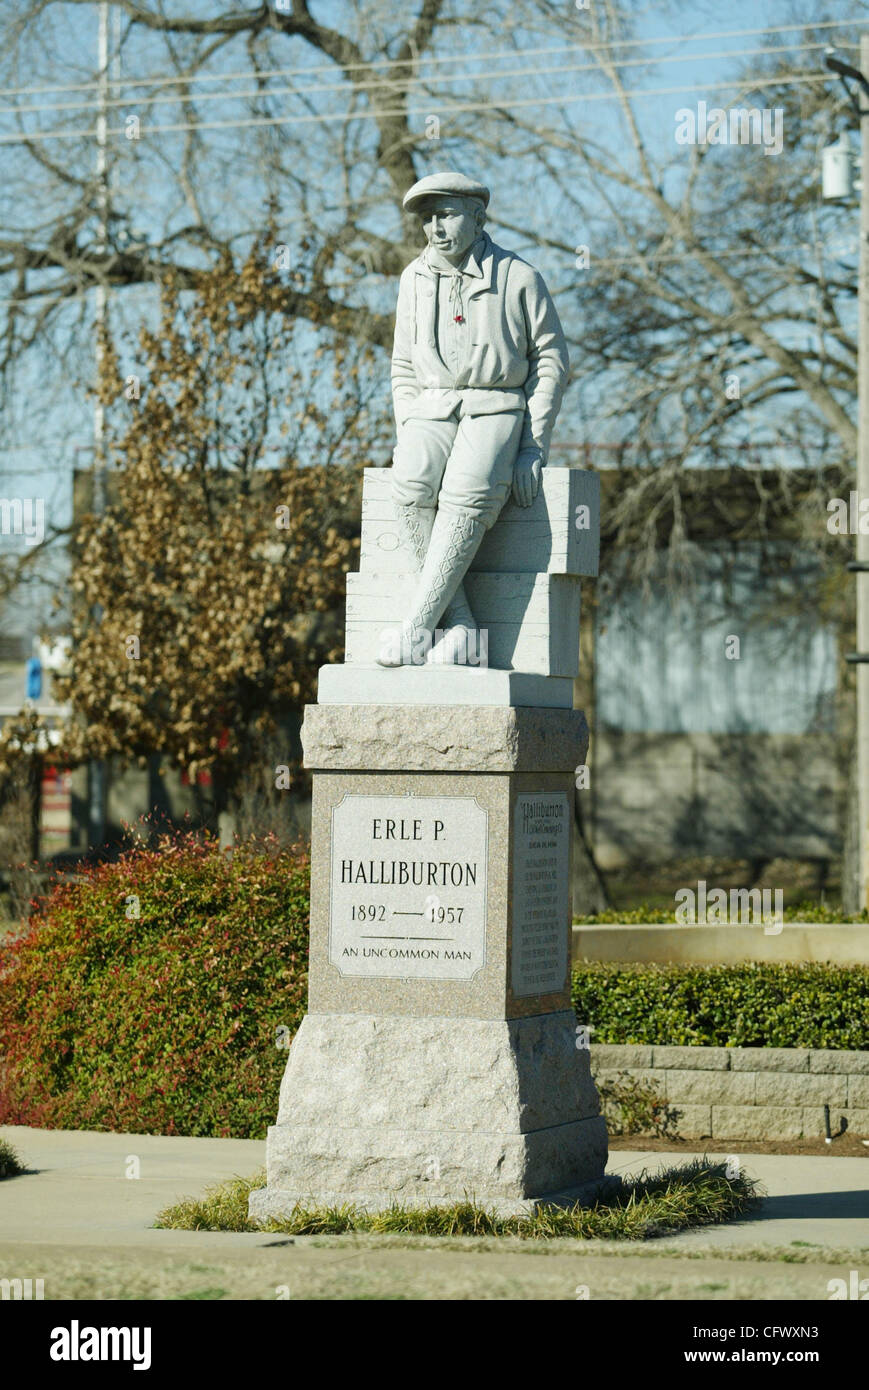 Marzo 04, 2007 - Duncan, Oklahoma, Estados Unidos - una estatua en honor a especialista petrolero ERLE P. HALLIBURTON está en Duncan Memorial Park en EE.UU. Highway 81, una parte de la Chisholm Trail. (Crédito de la imagen: (c) Robert Hughes/ZUMA Press) Foto de stock